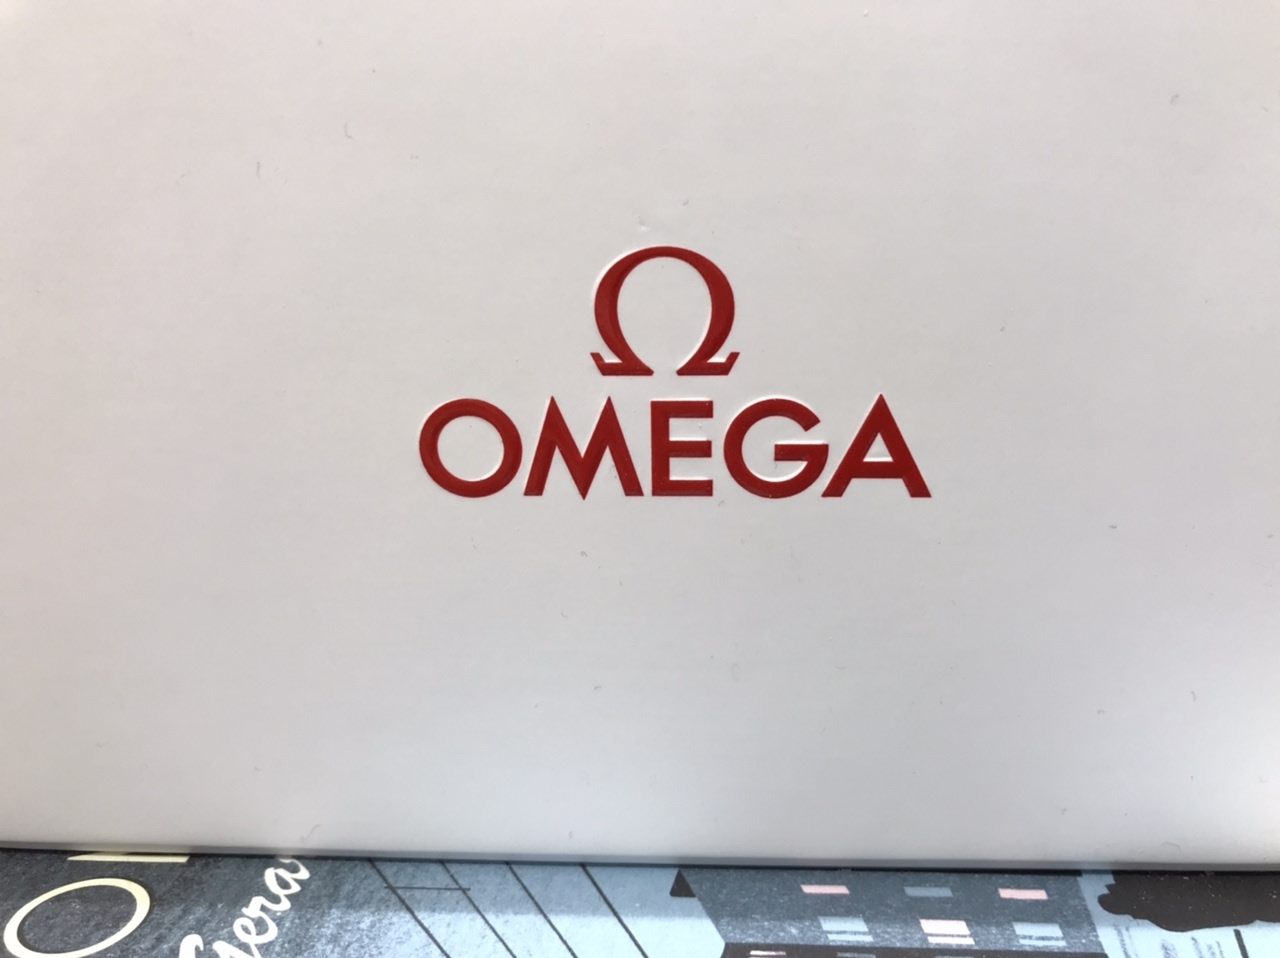 Omega - Omega webshop release today.